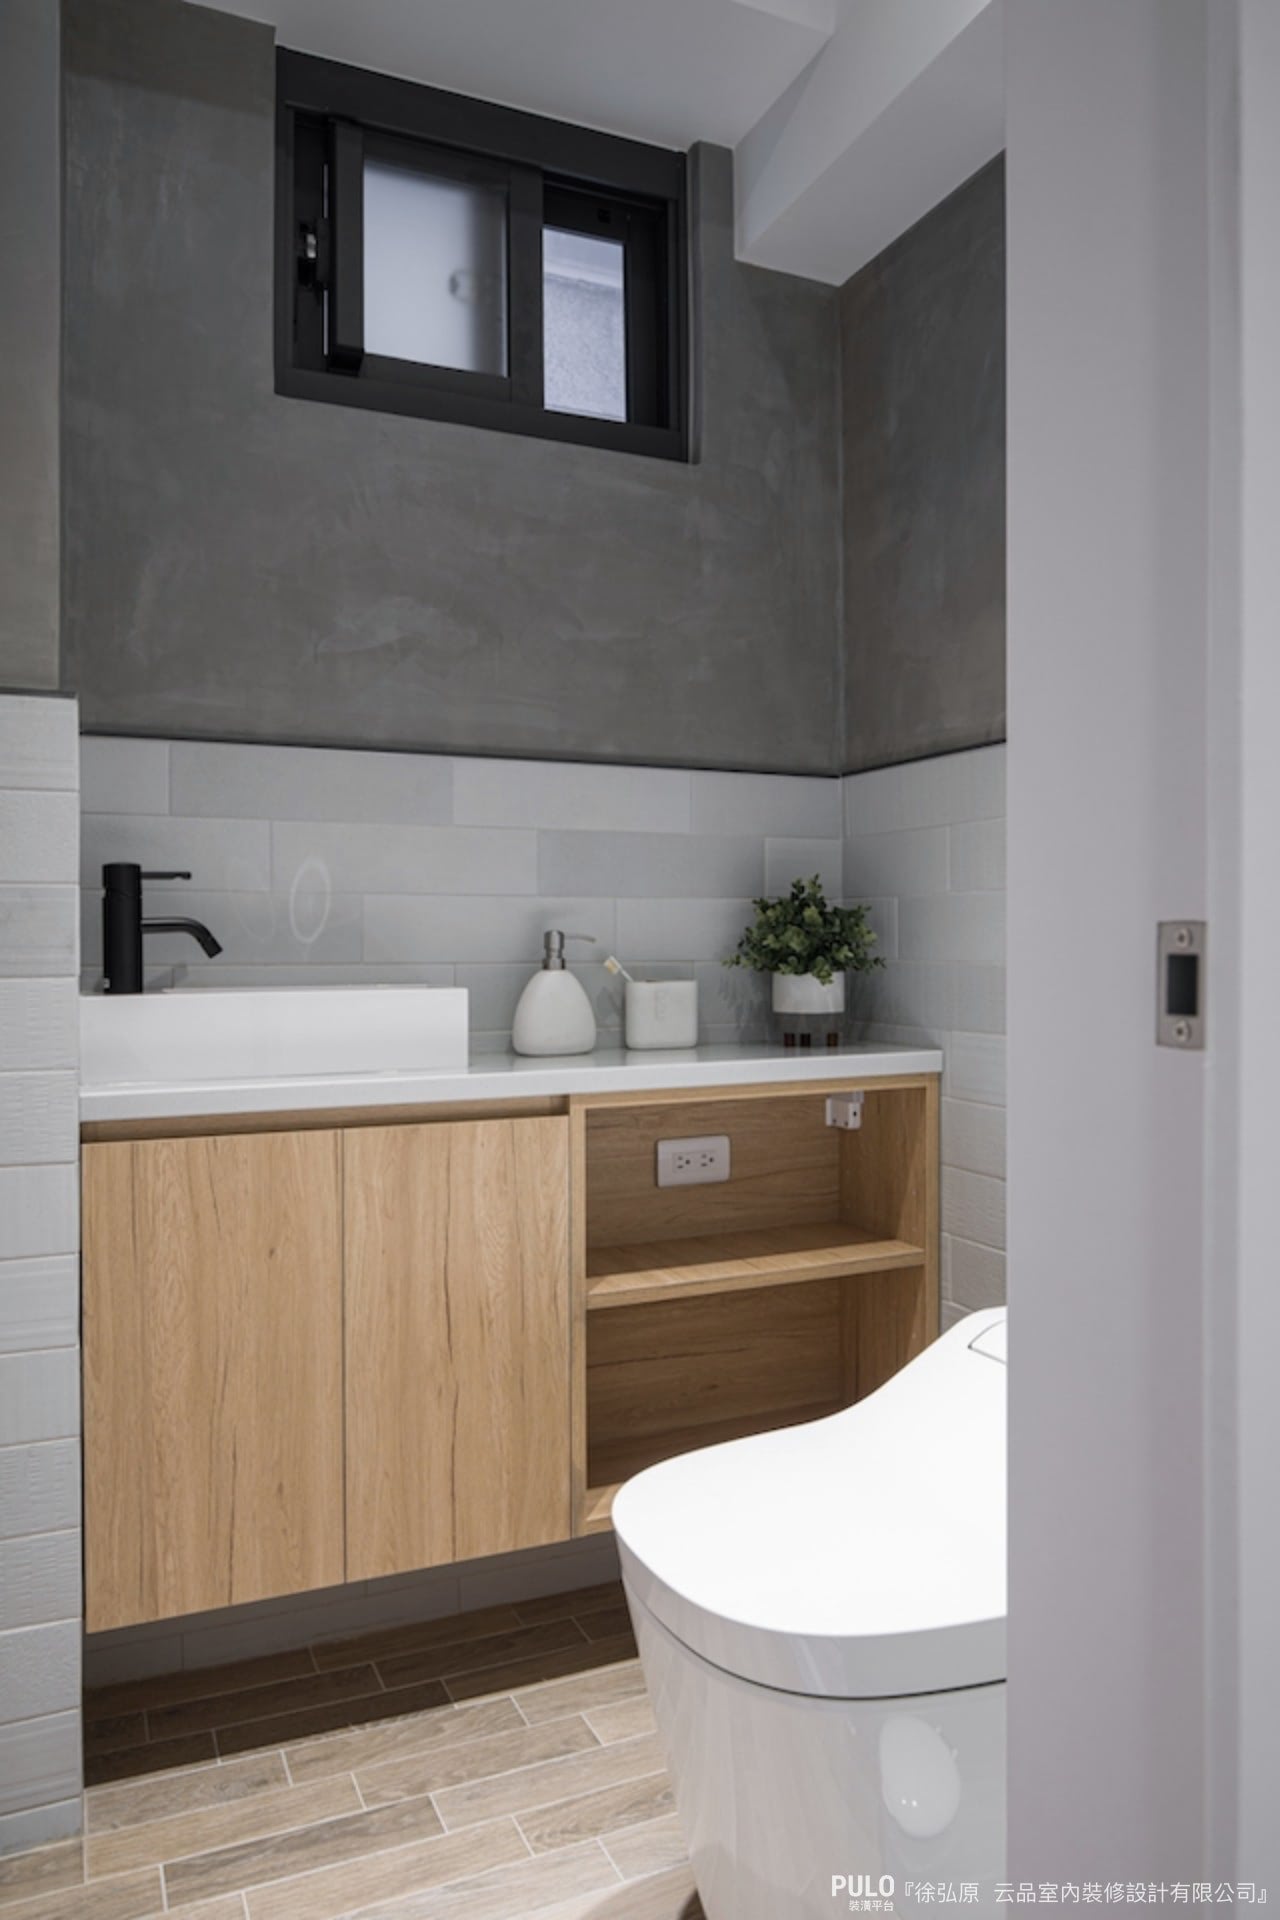 浴室收納櫃可以選擇懸吊式的，下方開放通風、不容易積水長霉。云品室內裝修設計有限公司乾濕分離浴室設計作品 - PULO裝潢平台